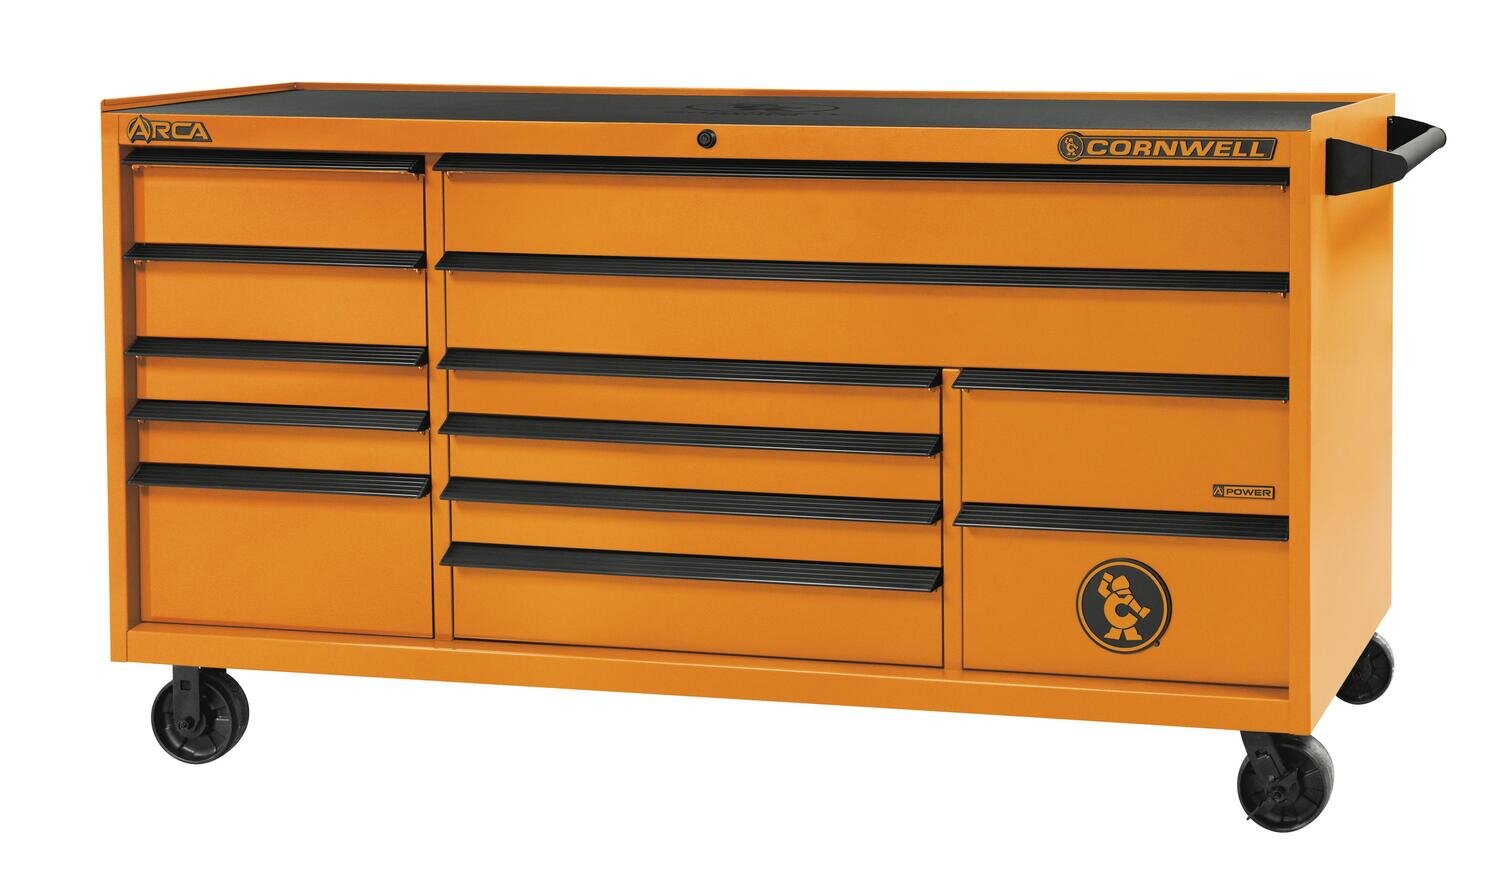 CTSASR7913KRE - ARCA™ 79” 13-Drawer Triple Bank Roller Cabinet, Ignition Orange